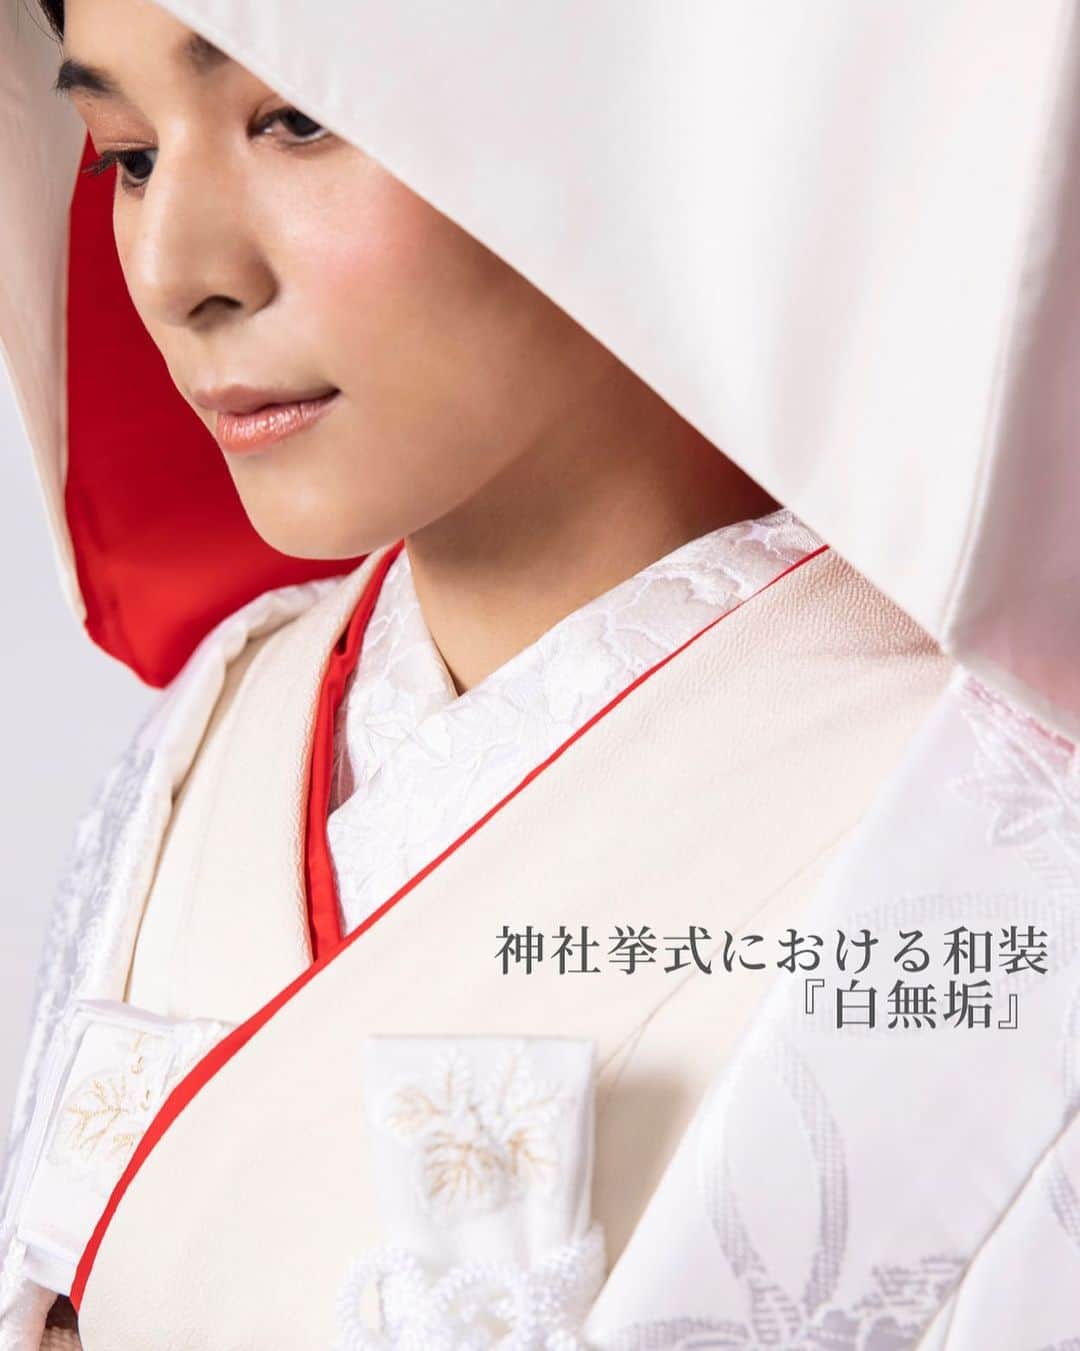 juno_jinjakonのインスタグラム：「神社挙式において多くの花嫁様がお選びになる 『白無垢』は和装の代表格とされており、 婚礼衣装のなかではもっとも格式が高い衣装です。  白無垢は室町時代に武家の婚礼衣装として始まり、その白さは「神聖」を表すとともに「嫁いだ先の家風に染まる」という意味合いを持っていました。  生地の素材は正絹（しょうけん）・化繊（かせん）・交織（こうしょく）の3種類で、色味や着心地が異なります。  JUNO神社婚全店で取り扱いっている白無垢の生地は全て正絹になります。 天然の絹のみを使った生地であり、肌触りに優れているのが特徴です。  最近では、化繊といった化学繊維だけで織られた生地の白無垢も多くございますが 光が反射しやすく、柄が見えづらくなるのが難点。着心地も正絹と異なります。  白無垢には吉祥文様（きっしょうもんよう）と呼ばれる、縁起をかついだ柄が施されています。例えば、とくに有名な模様は松竹梅。冬でも緑を失わない松と竹、ほかの花より先駆けて花を咲かせる梅の3つが組み合わさり、吉祥の象徴とも言える柄です。 ほかにも菊・牡丹・桜などの花柄は、見た目がさらに華やかになります。  このように 実際にお召しになられてみると柄行や 生地によってお写真におさめたときの雰囲気が異なってまいりますので、お衣装合わせを進められていらっしゃる花嫁様や これからお衣装合わせをはじめる花嫁様は ぜひ参考にして頂ければと思います🕊 ⁡  #神社挙式 #着物  #白無垢 #色打掛  #プレ花嫁 #juno和装コーディネート #家族婚 #少人数結婚式 #福岡神社 #熊本神社 #福岡結婚式 #熊本結婚式 #札幌花嫁  #福岡フォトウェディング #大人花嫁 #和装ヘアメイク  #太宰府天満宮 #2022年春婚  #婚礼衣装  #正絹」